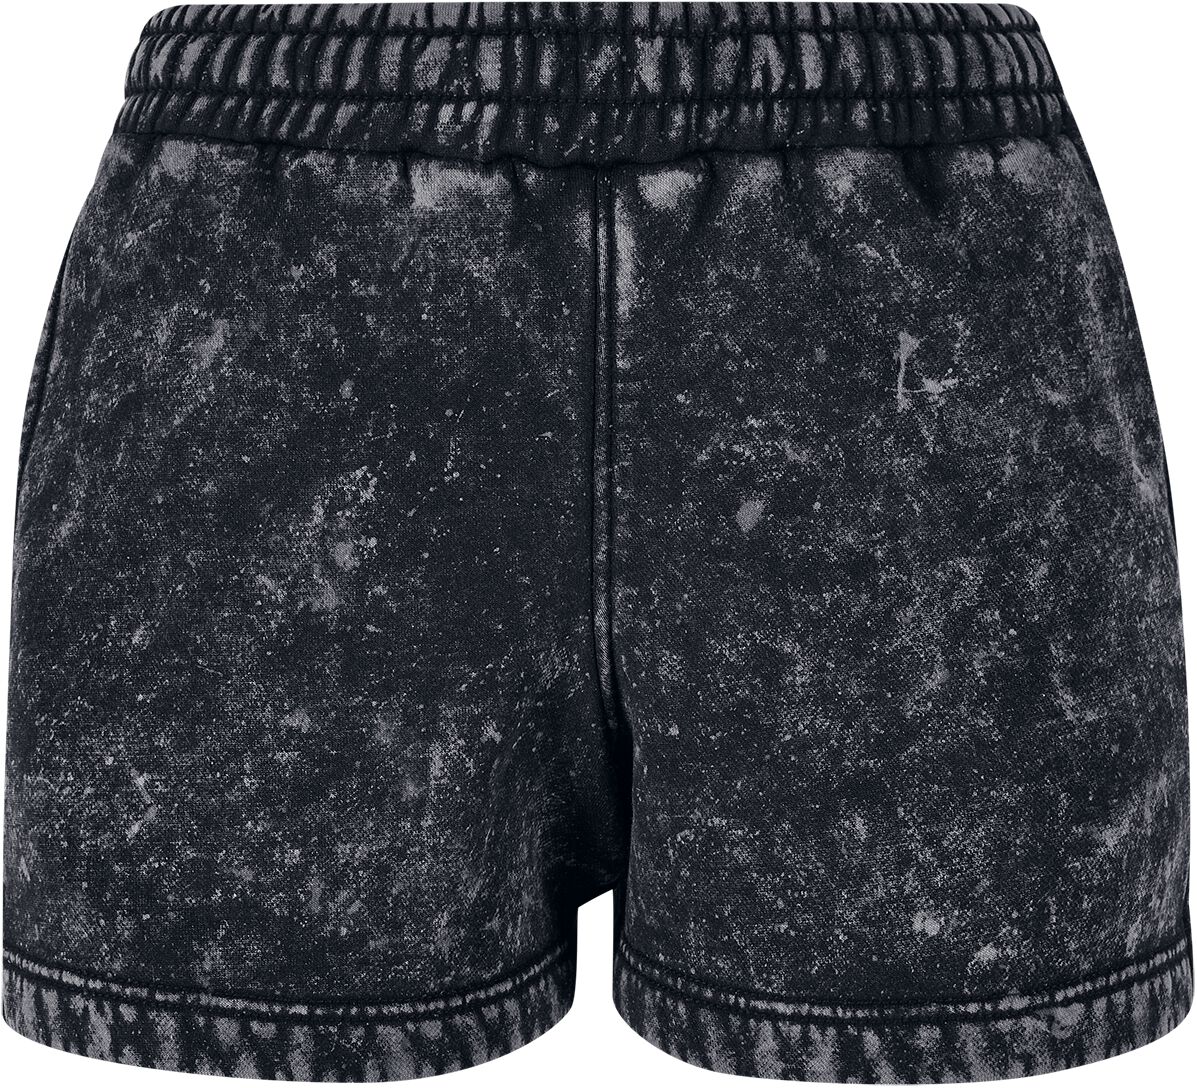 Urban Classics Short - Ladies Towel Washed Sweat Shorts - XS bis S - für Damen - Größe XS - schwarz